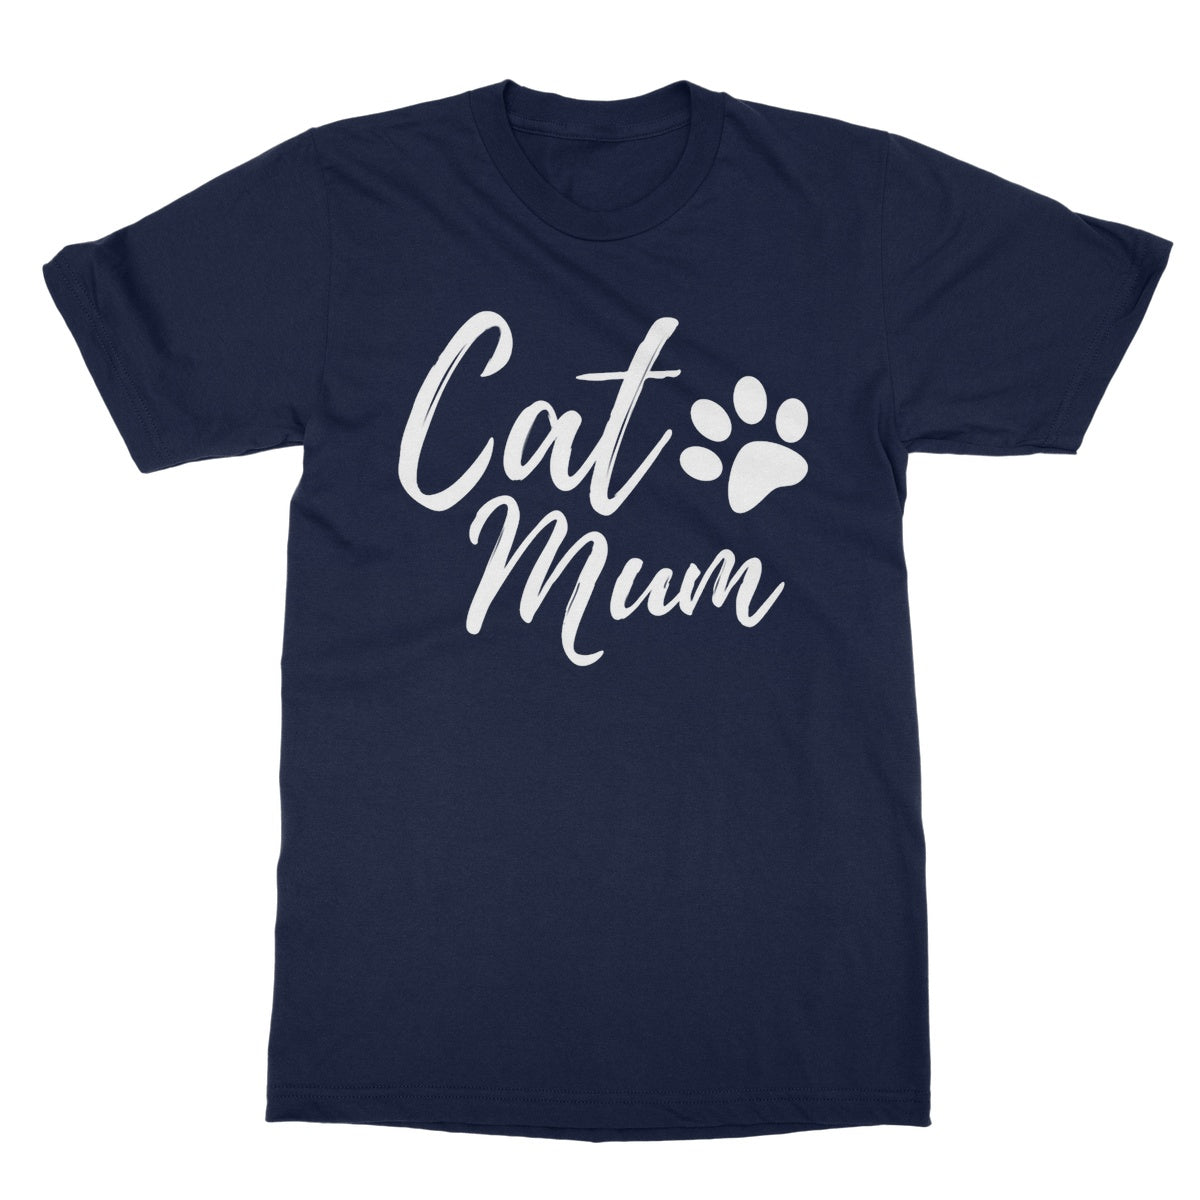 cat mum t shirt navy